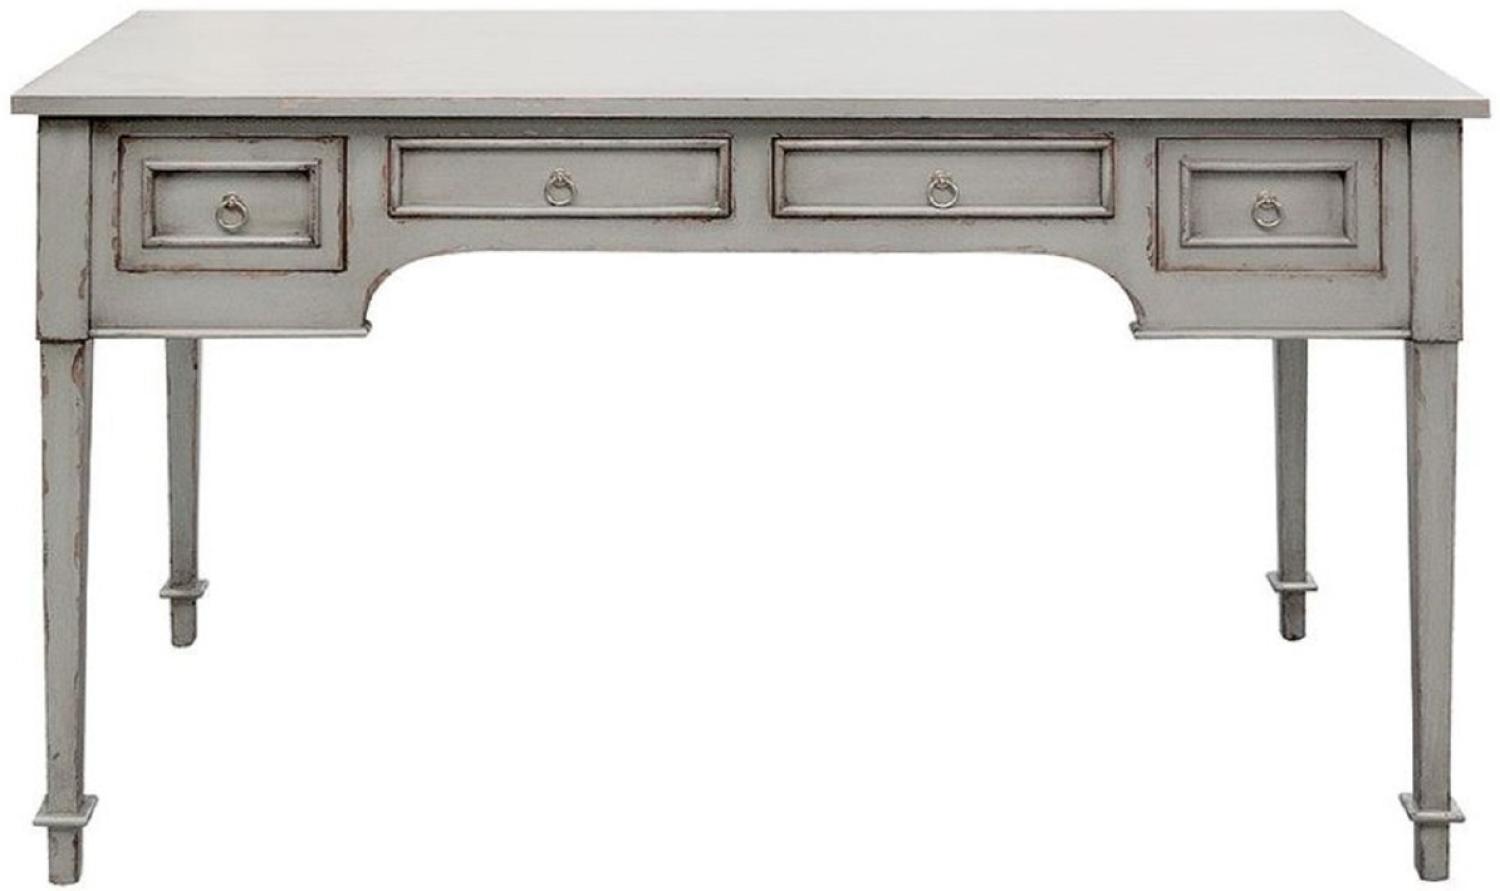 Casa Padrino Luxus Landhausstil Schreibtisch mit 4 Schubladen Antik Grau 136 x 70 x H. 77 cm - Handgefertigter Massivholz Bürotisch - Büromöbel im Landhausstil Bild 1